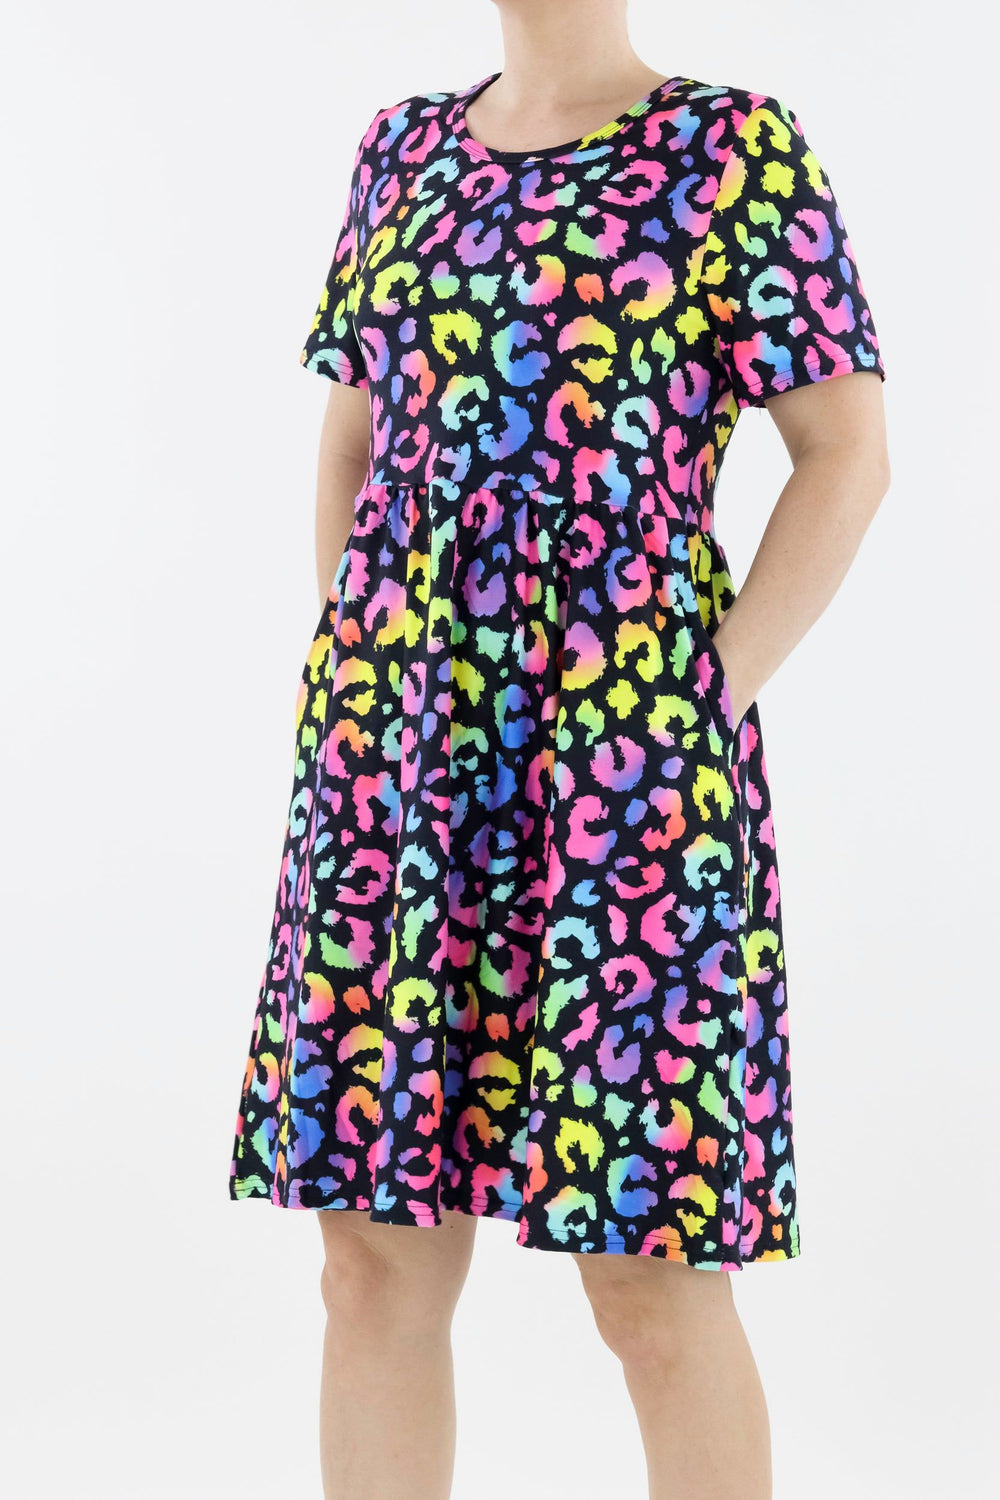 Radiant Leopard - Short Sleeve Skater Dress - Knee Length - Side Pockets Knee Length Skater Dress Pawlie   